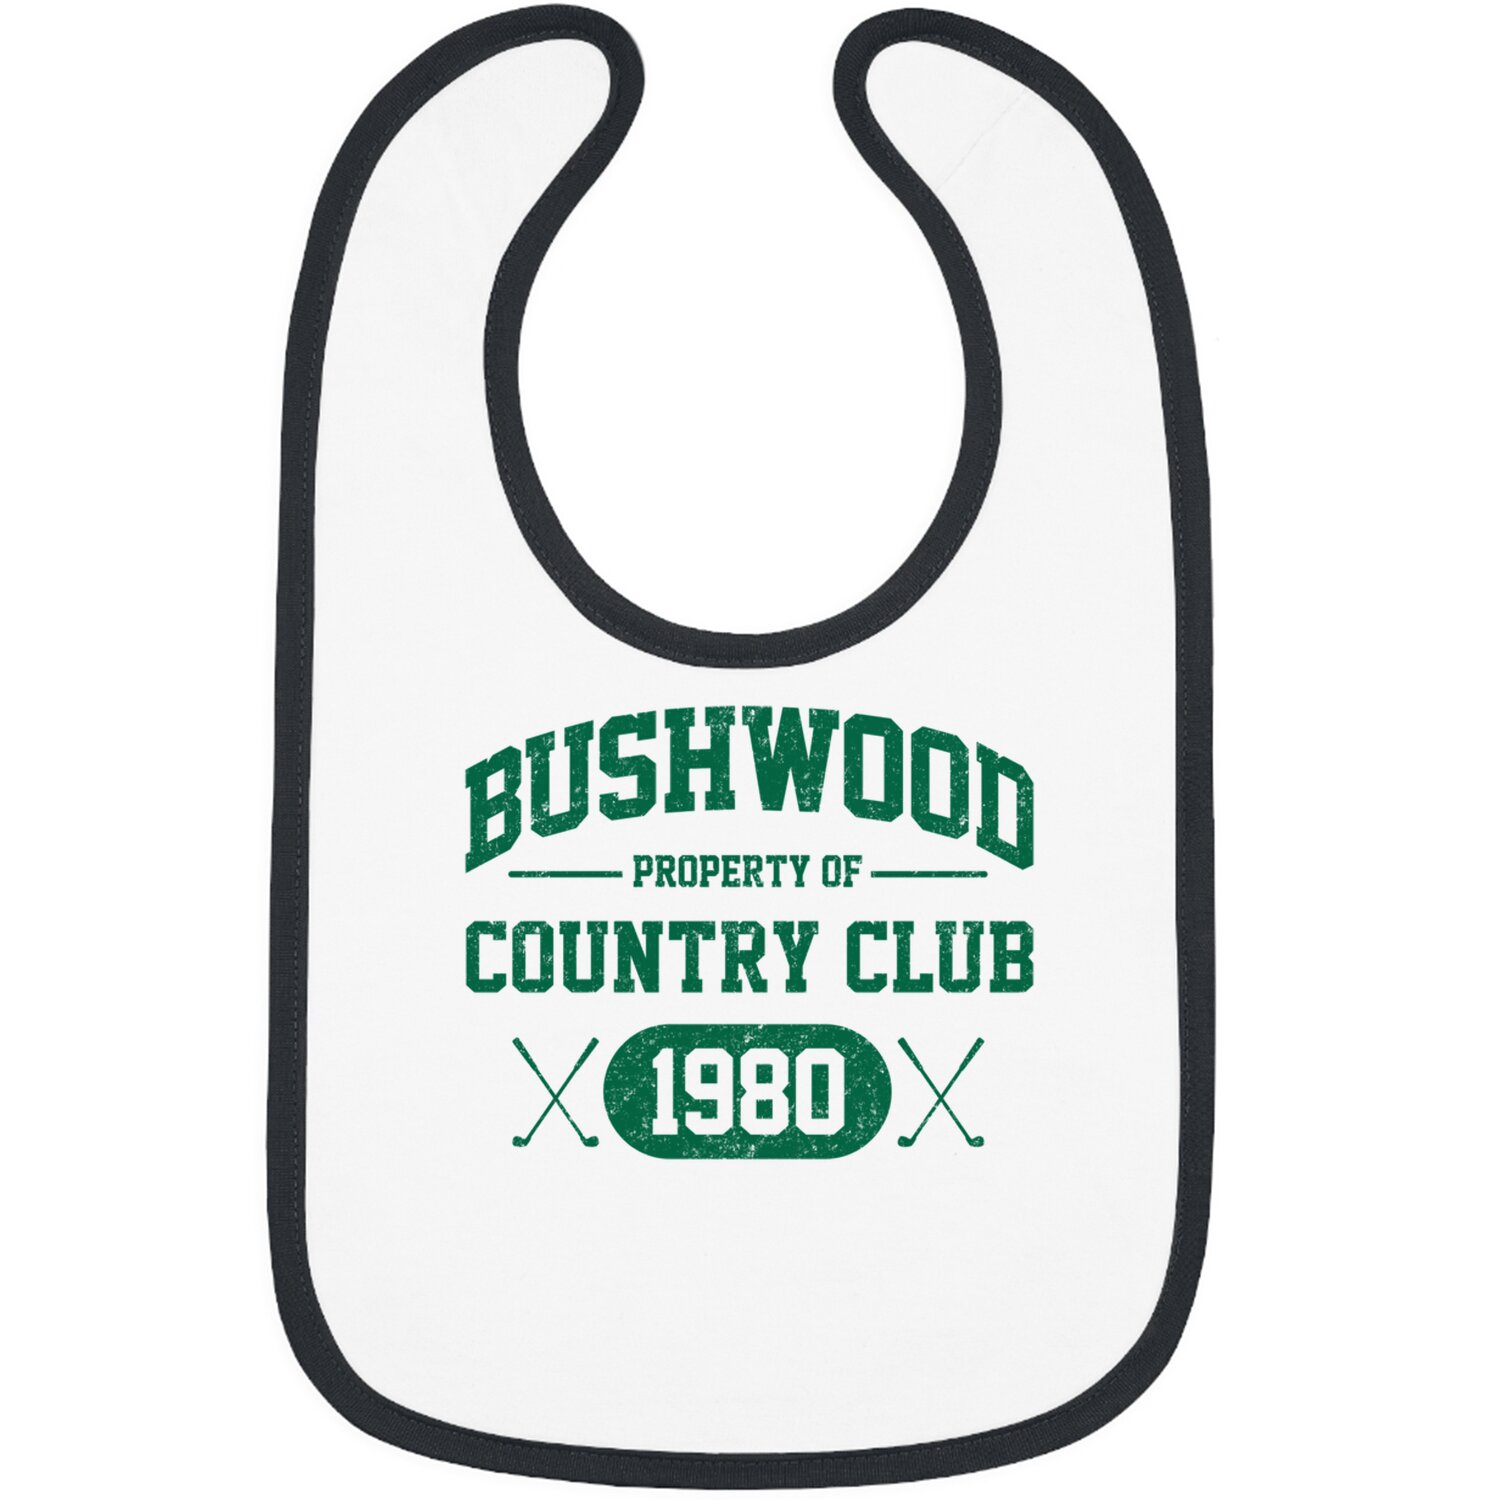 Bushwood Country Club 1980 - Caddyshack - Bibs